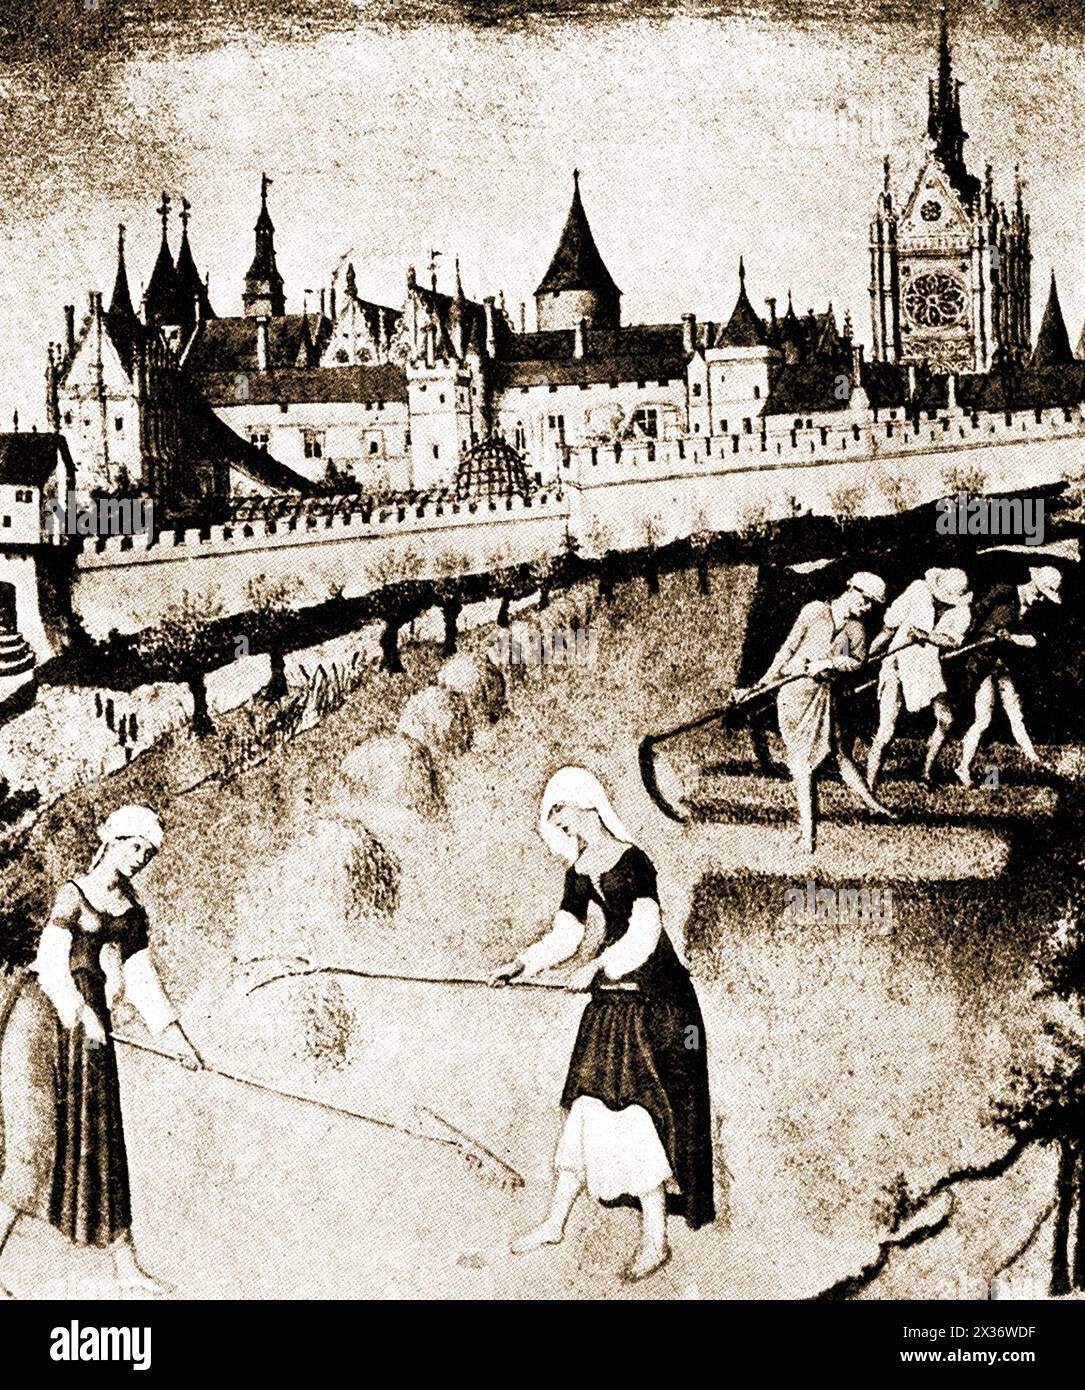 A 15th century image of the Pointe de Cite, Paris, France - Image du XVe siècle de la Pointe de Cite, Paris, France Stock Photo